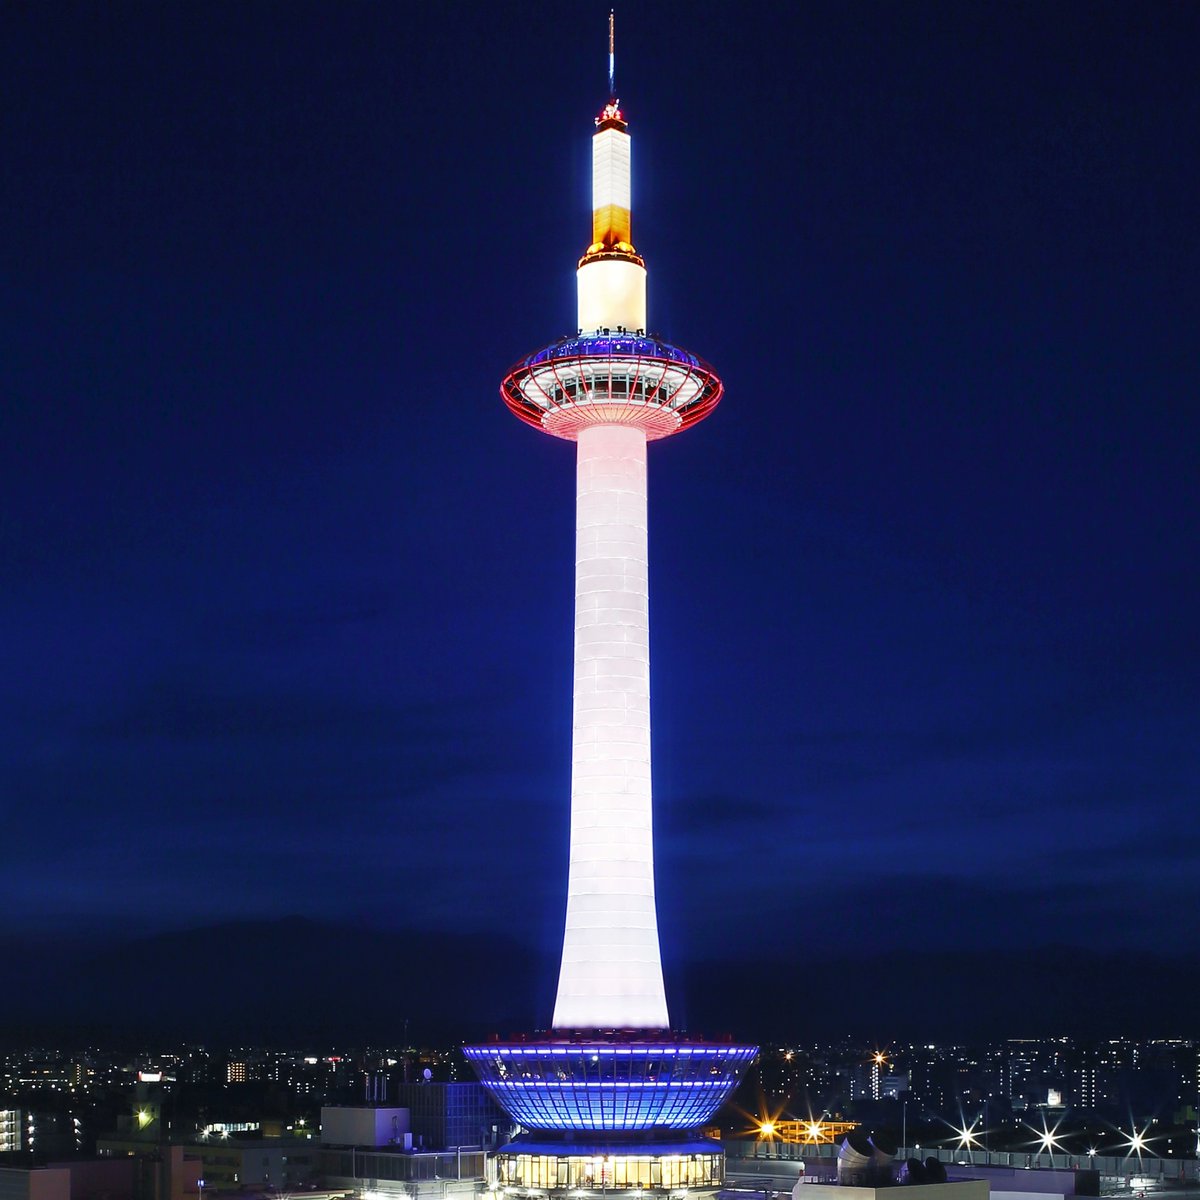 京都タワー 公式 毎月16日 Do You Kyoto 本日9月16日 木 はdo You Kyoto デー 環境に良いことをする日 として 塔体照明をライトダウン 00 22 00 いたします 上記以外の日没 00 22 00 24 00は ホワイトにライトアップいたします